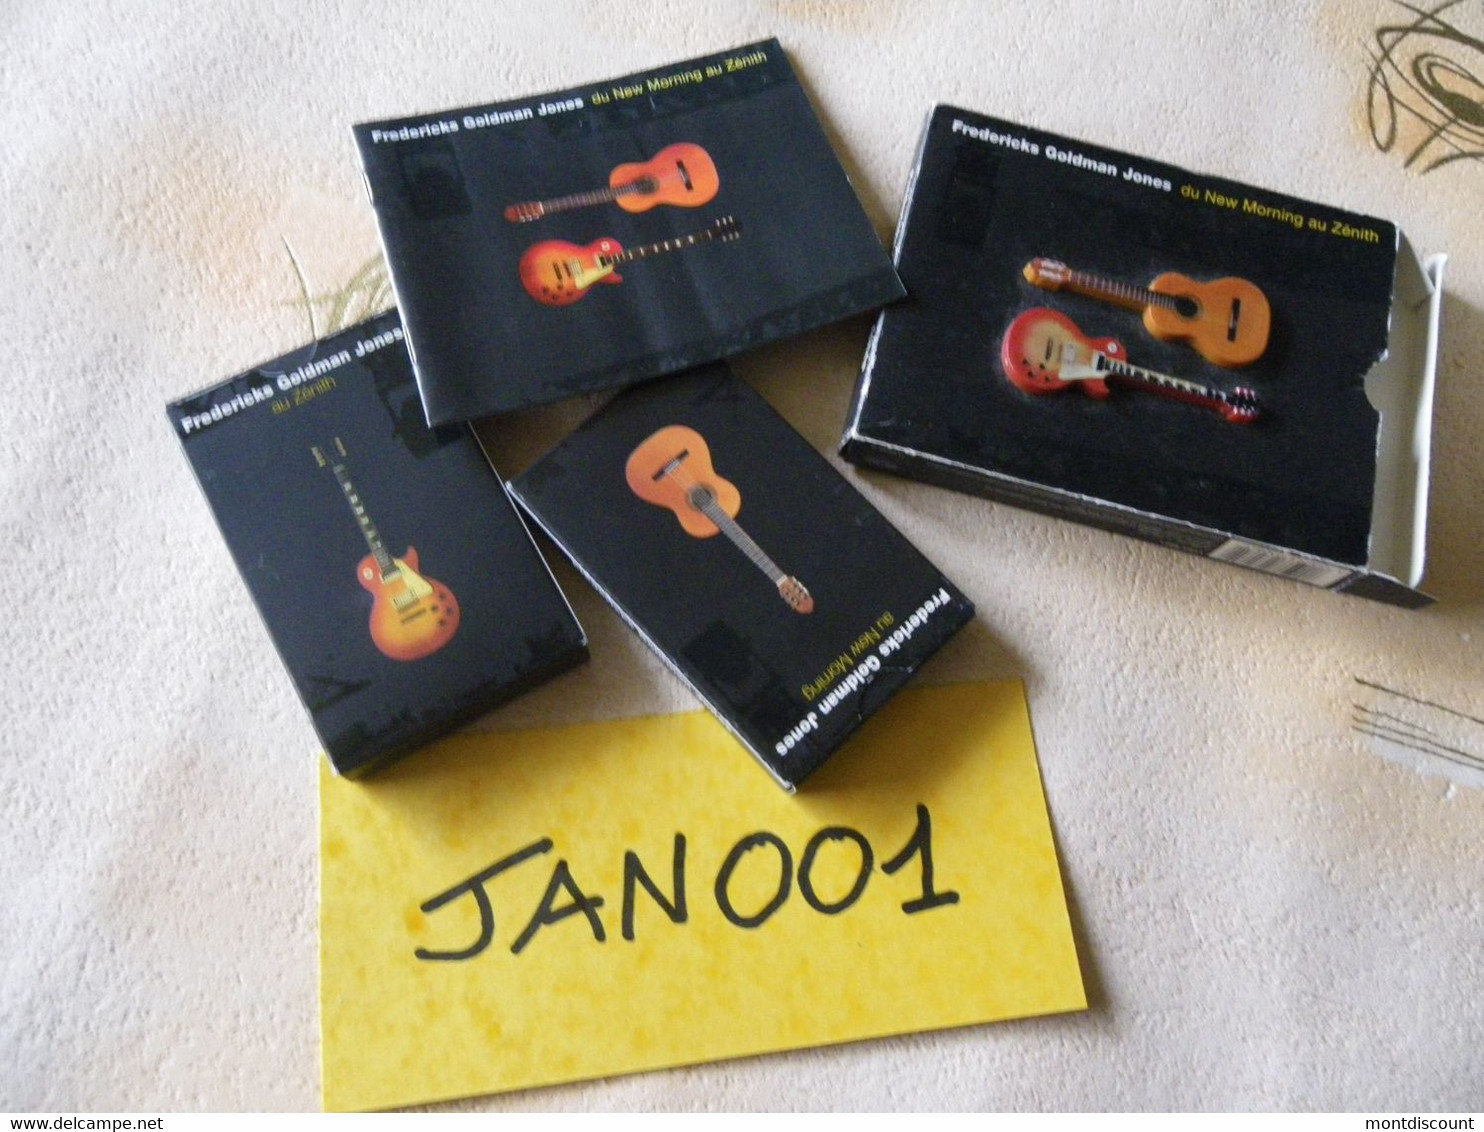 JEAN-JACQUES GOLDMAN K7 AUDIO FOURREAU CARTON RARE... VOIR PHOTO...ET REGARDEZ LES AUTRES (PLUSIEURS) (JAN 001) - Cassettes Audio